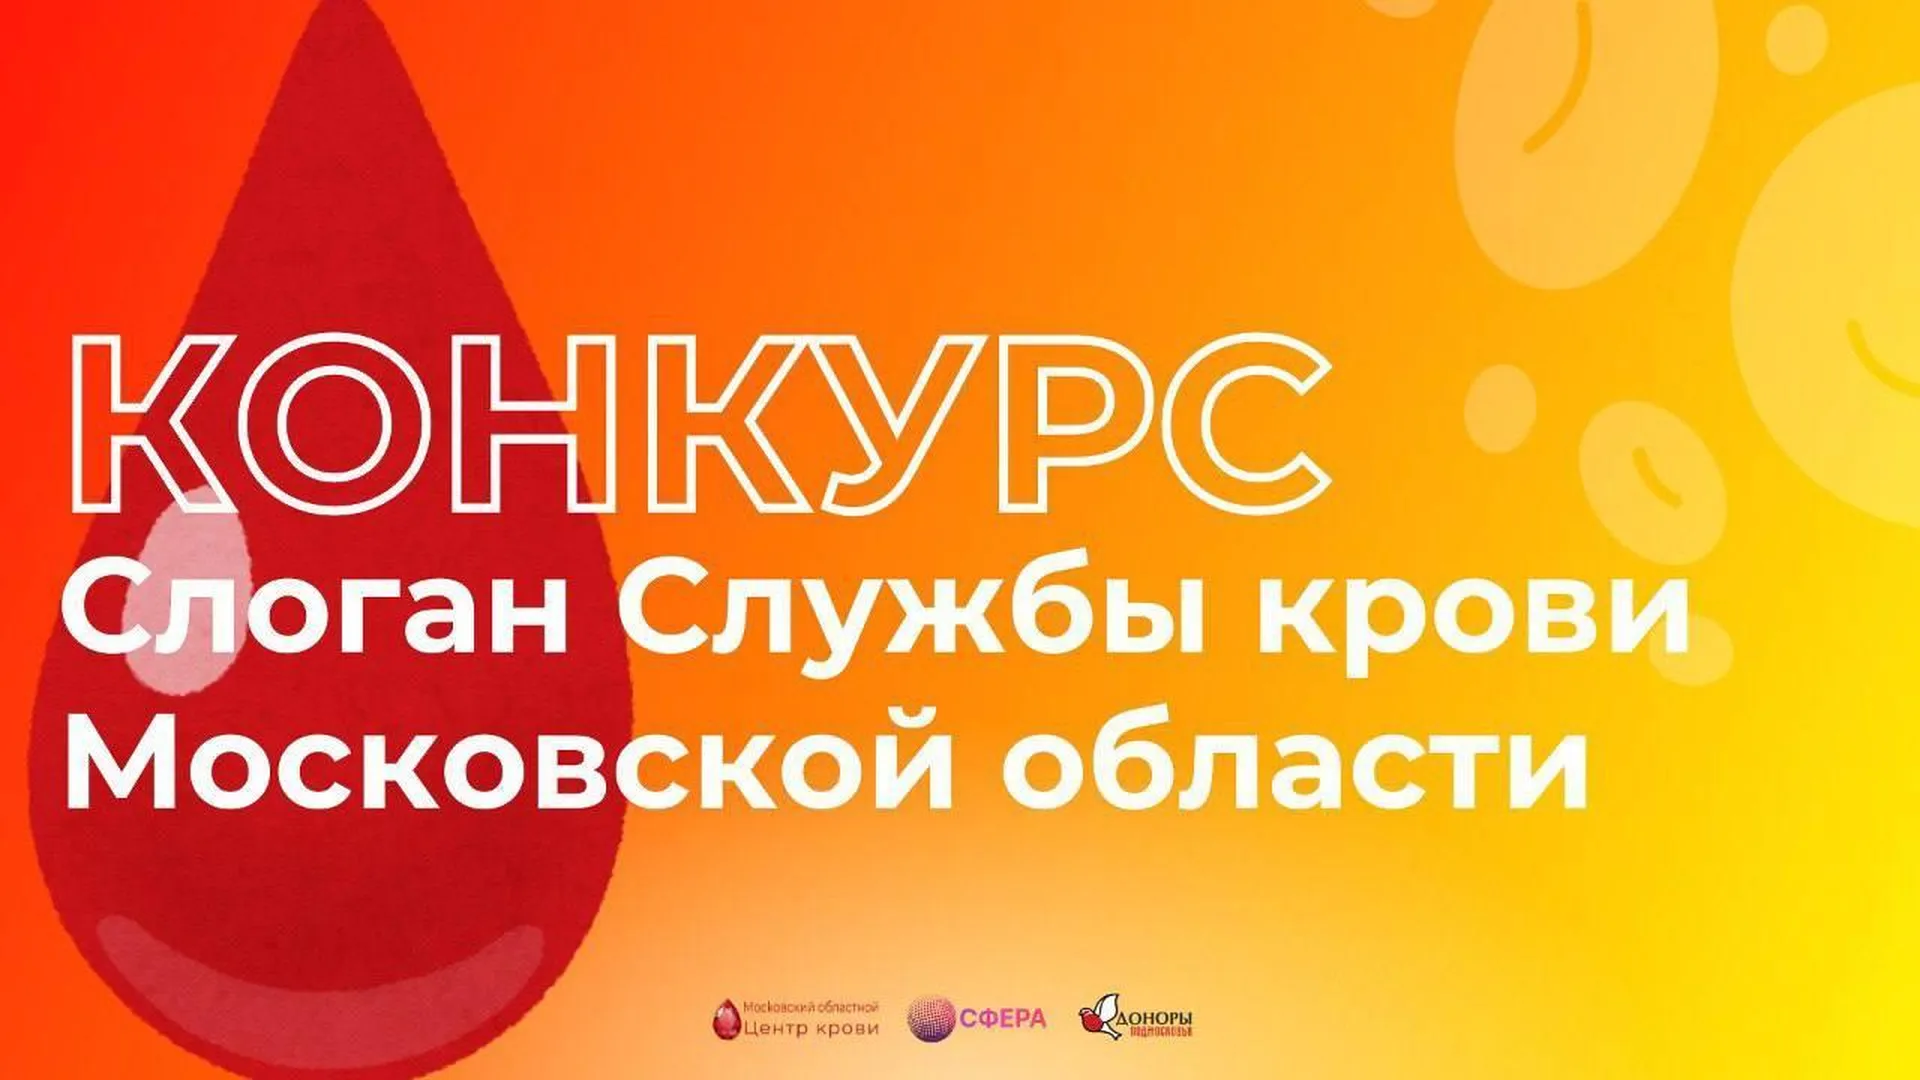 Службы крови Подмосковья объявили конкурс на самый лучший донорский слоган